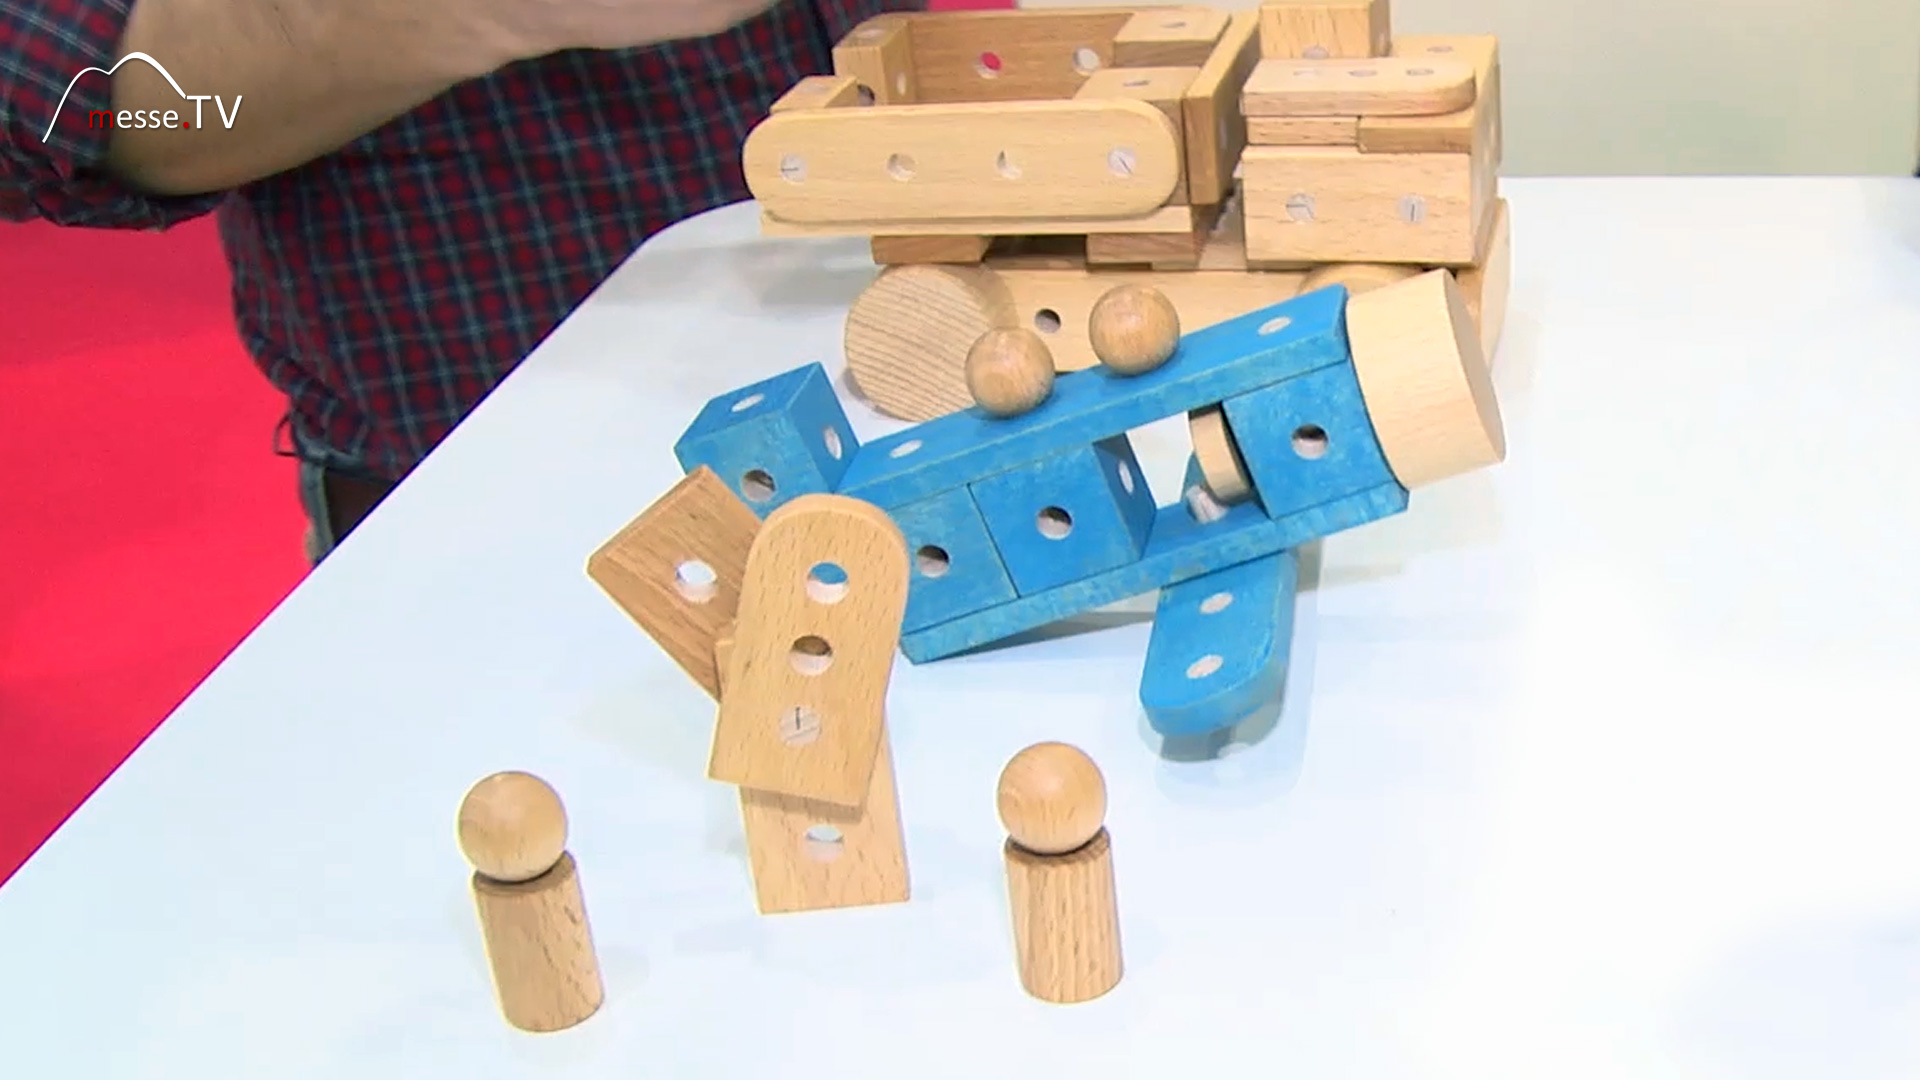 Bonhommes wooden play figures oi blocks